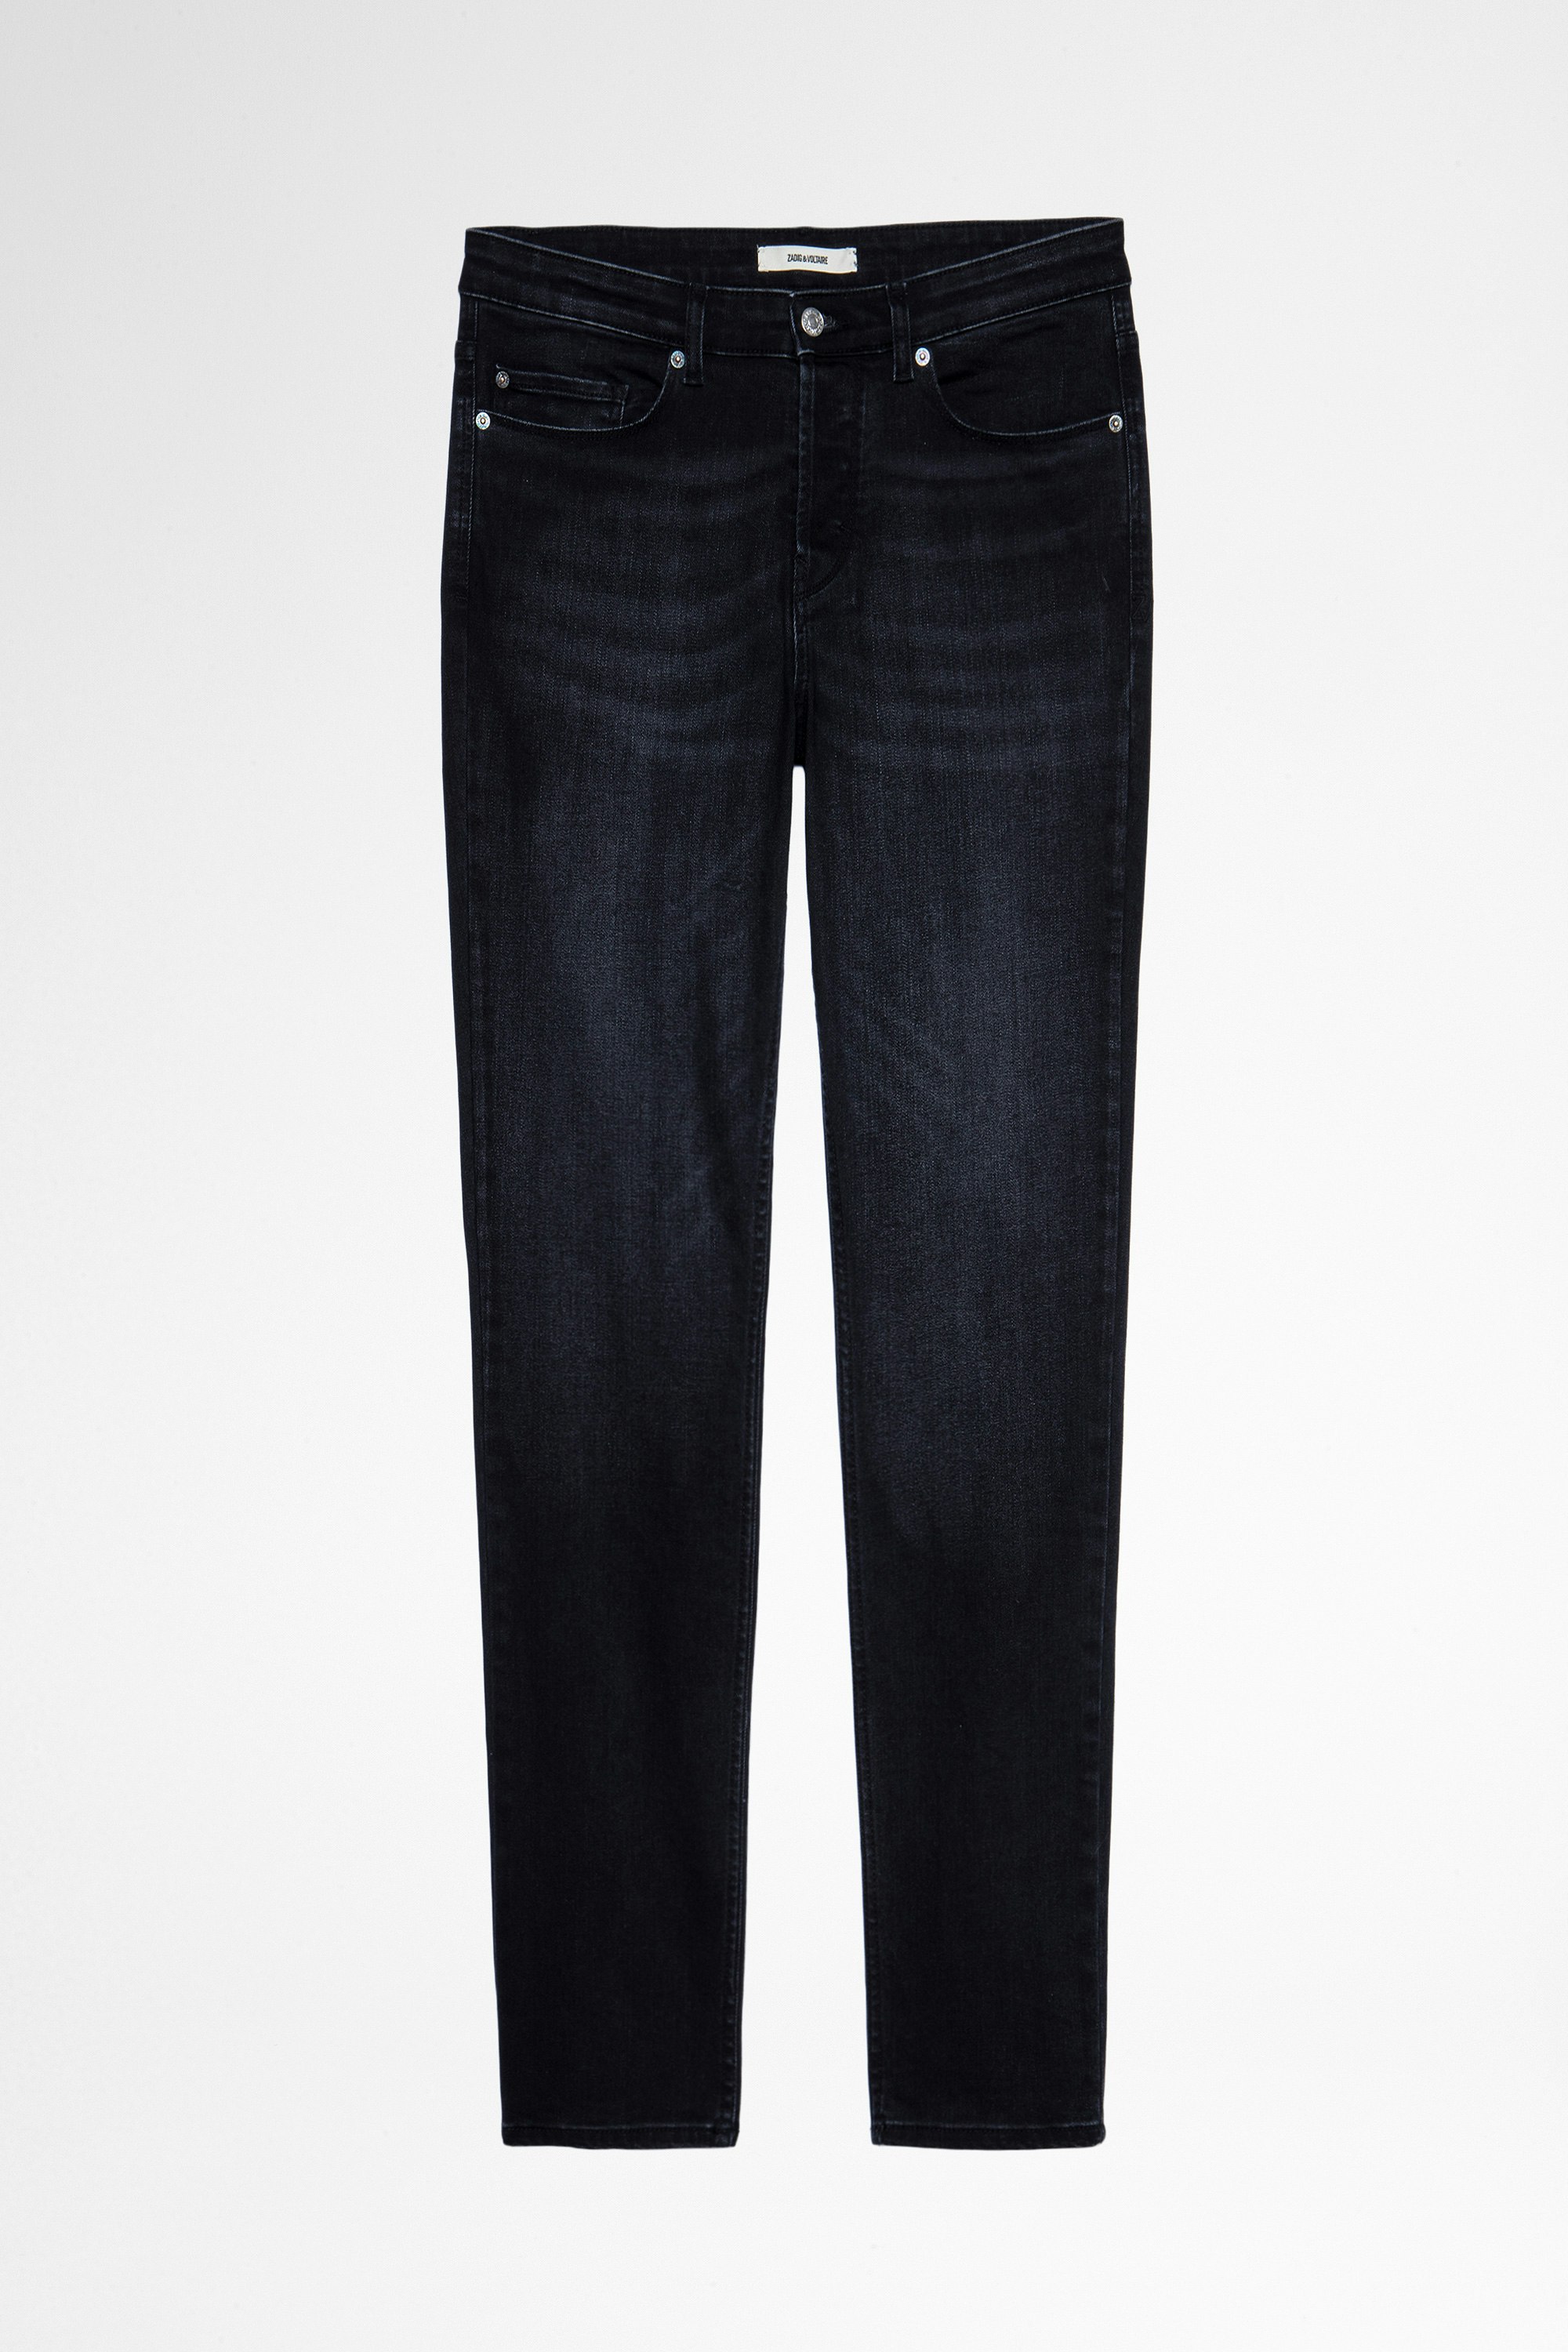 David Eco Jeans Men's gray slim-fit jeans